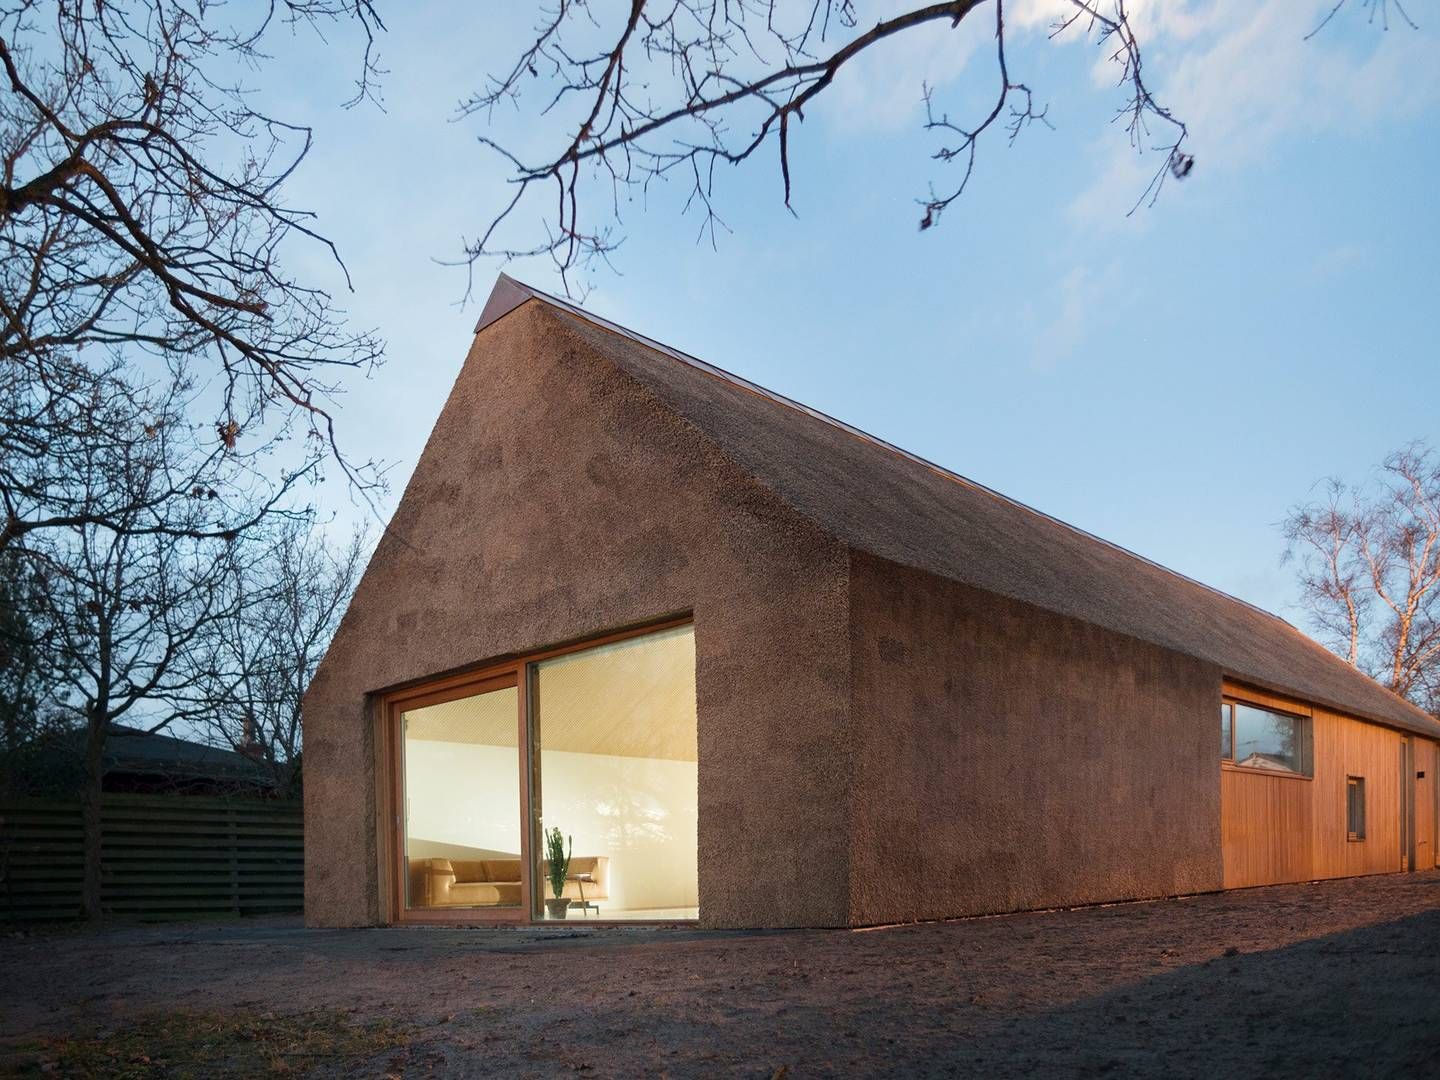 Et arkitekttegnet sommerhus i Østjylland er omdrejningspunktet for et aftalekompleks, der ifølge kuratellet har haft til formål at unddrage konkursboets kreditorer. | Foto: PR / Loop Architects